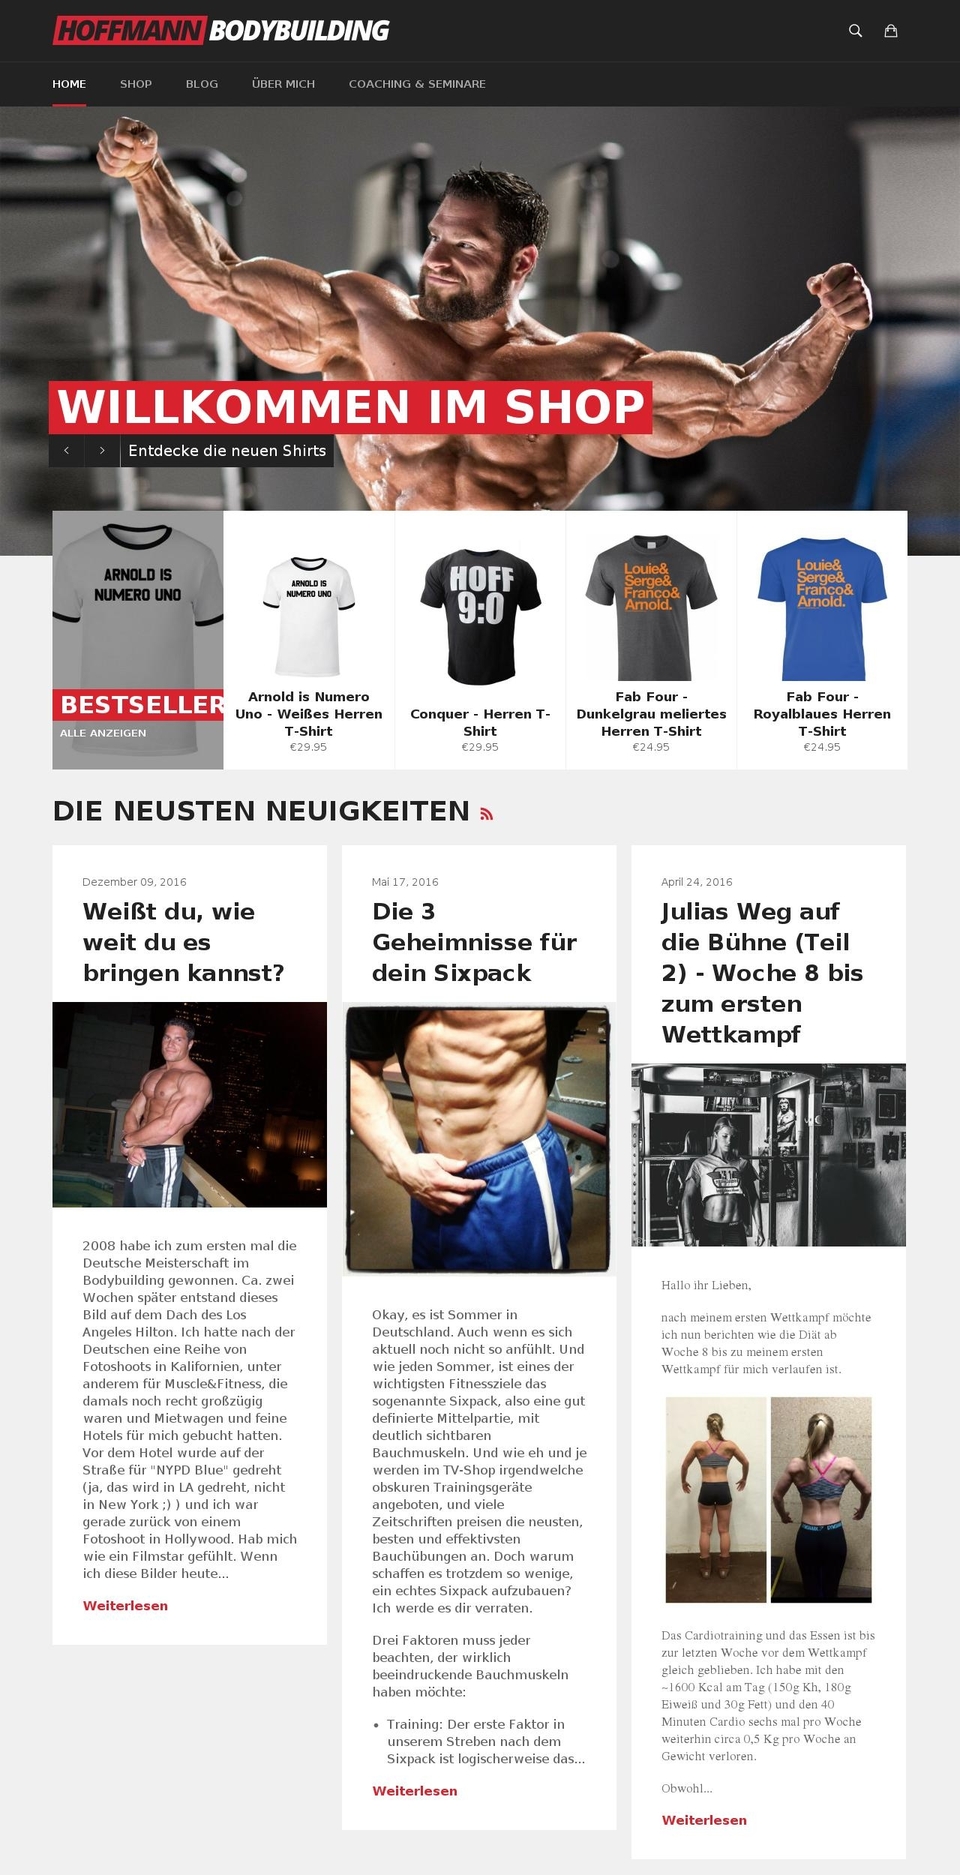 hoffmannfitness.de shopify website screenshot